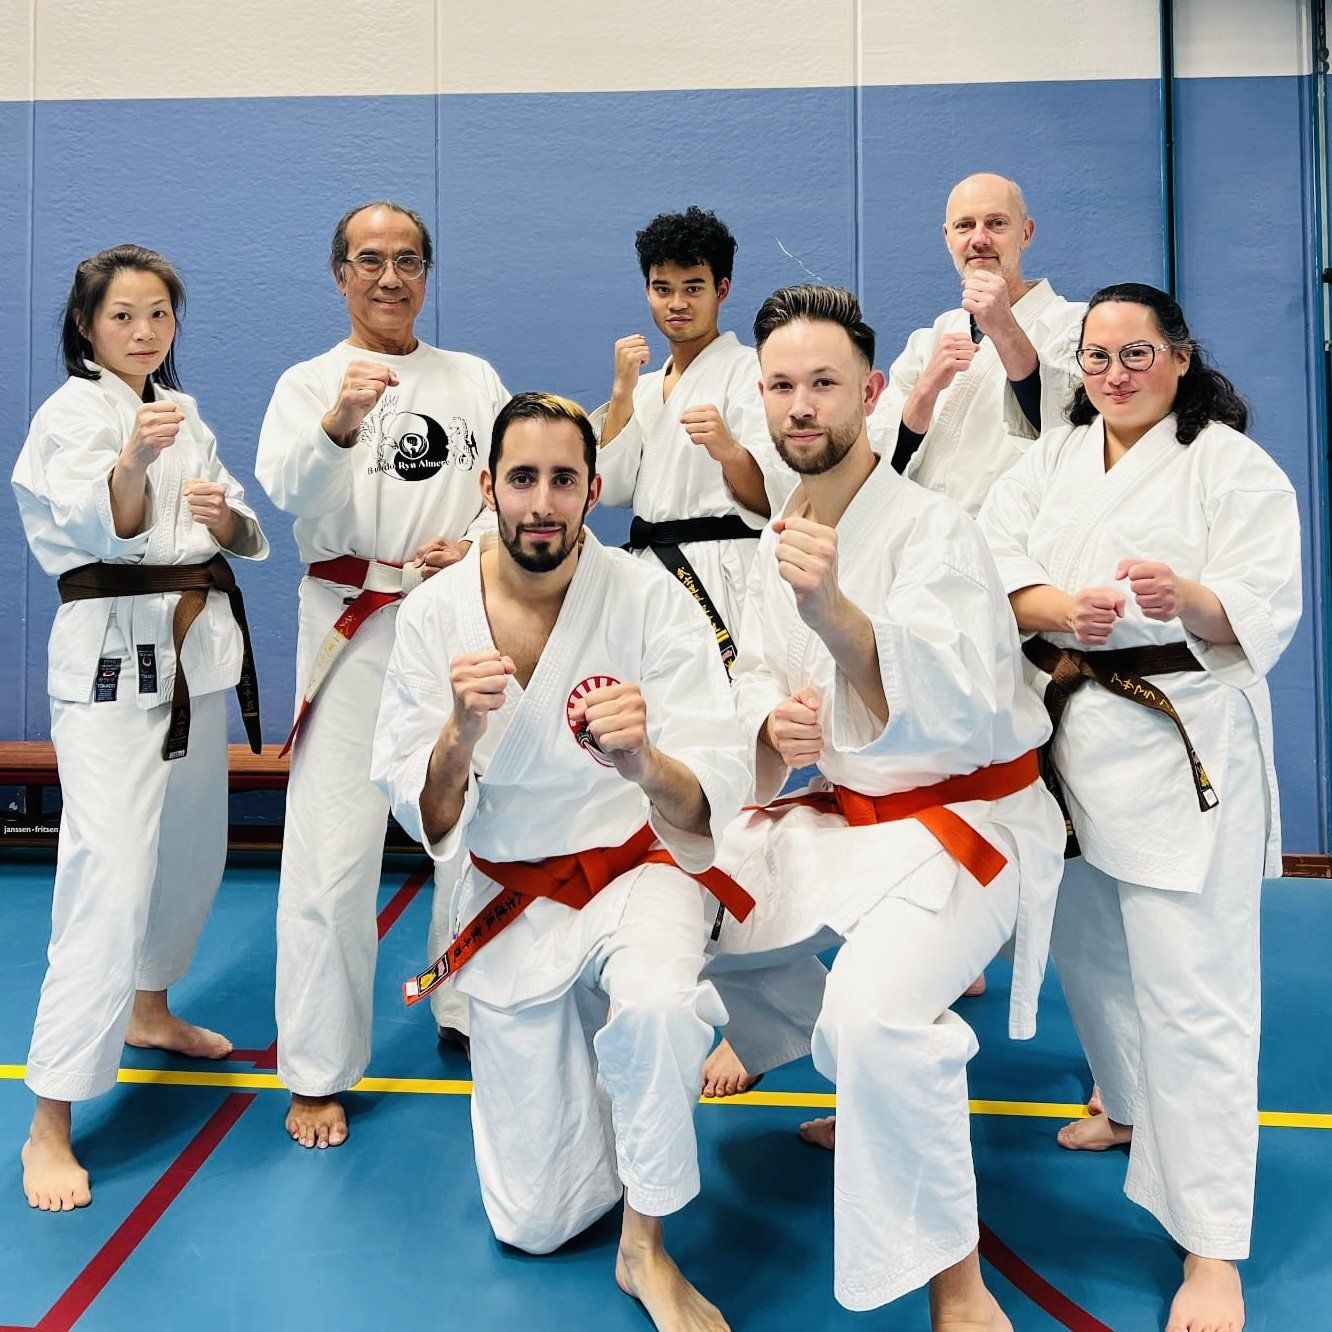 Volwassen karateka's in gevechtshouding met de twee examen kandidaten voorop.